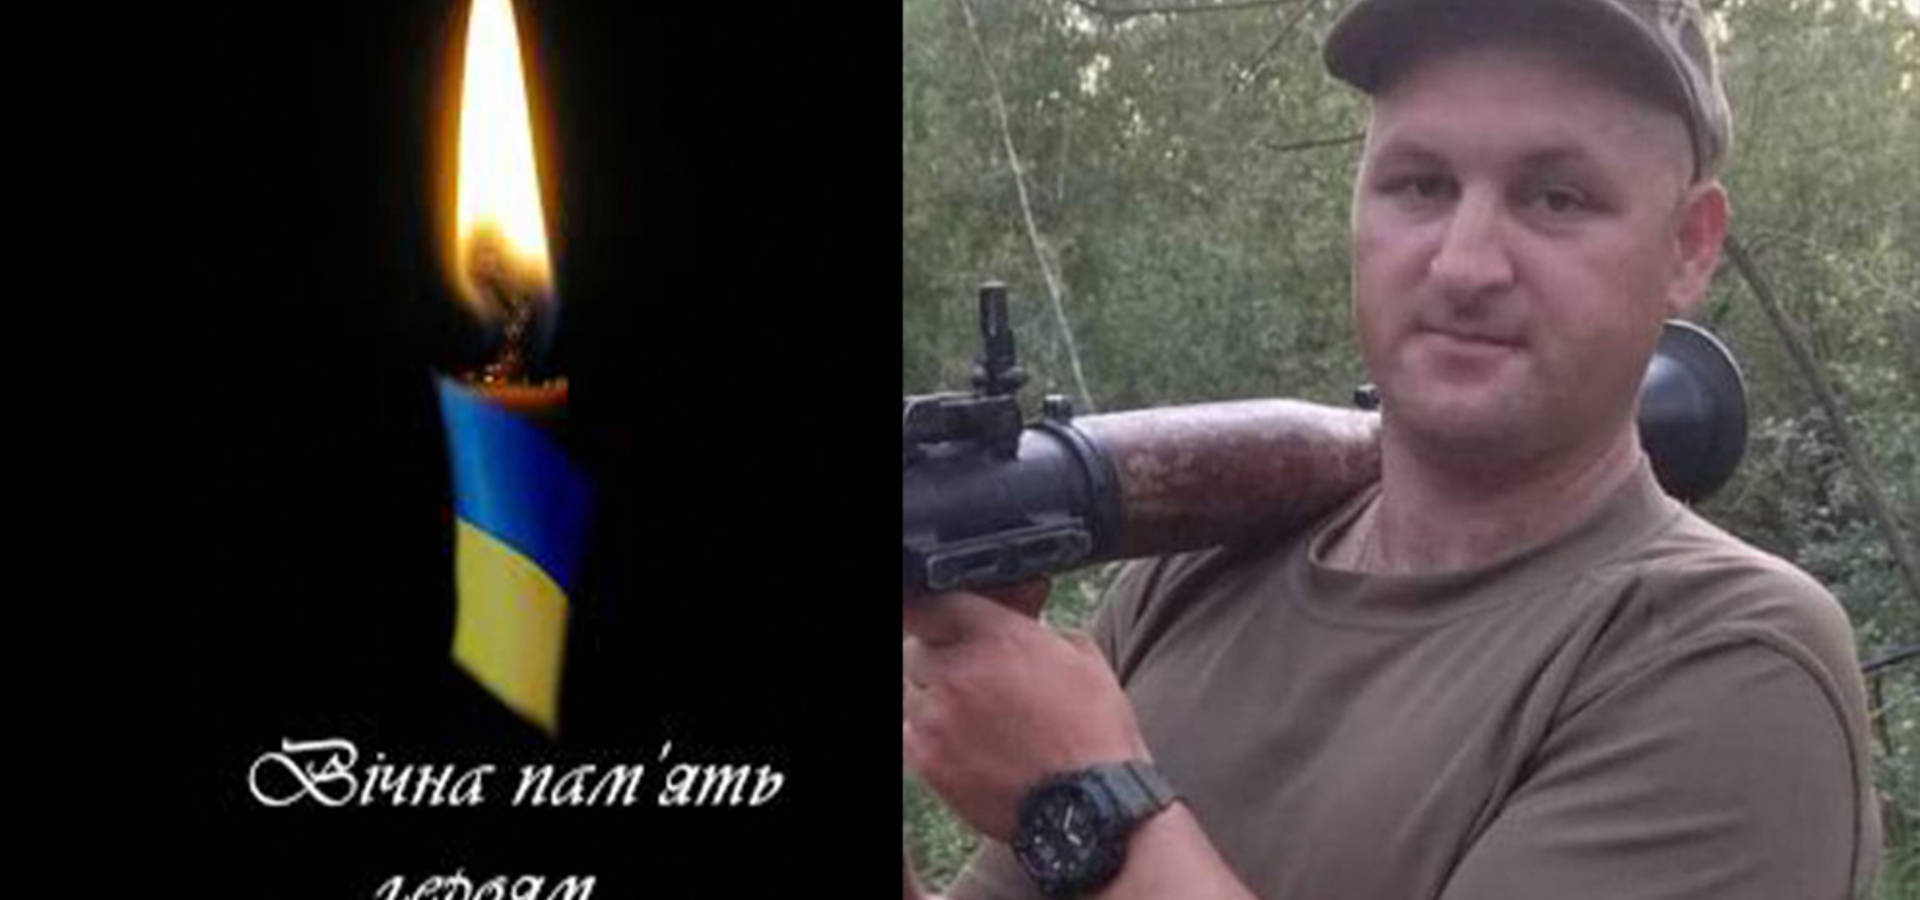 Сьогодні додому в село Кожухів "на щиті" повертається захисник України Юрій Попик